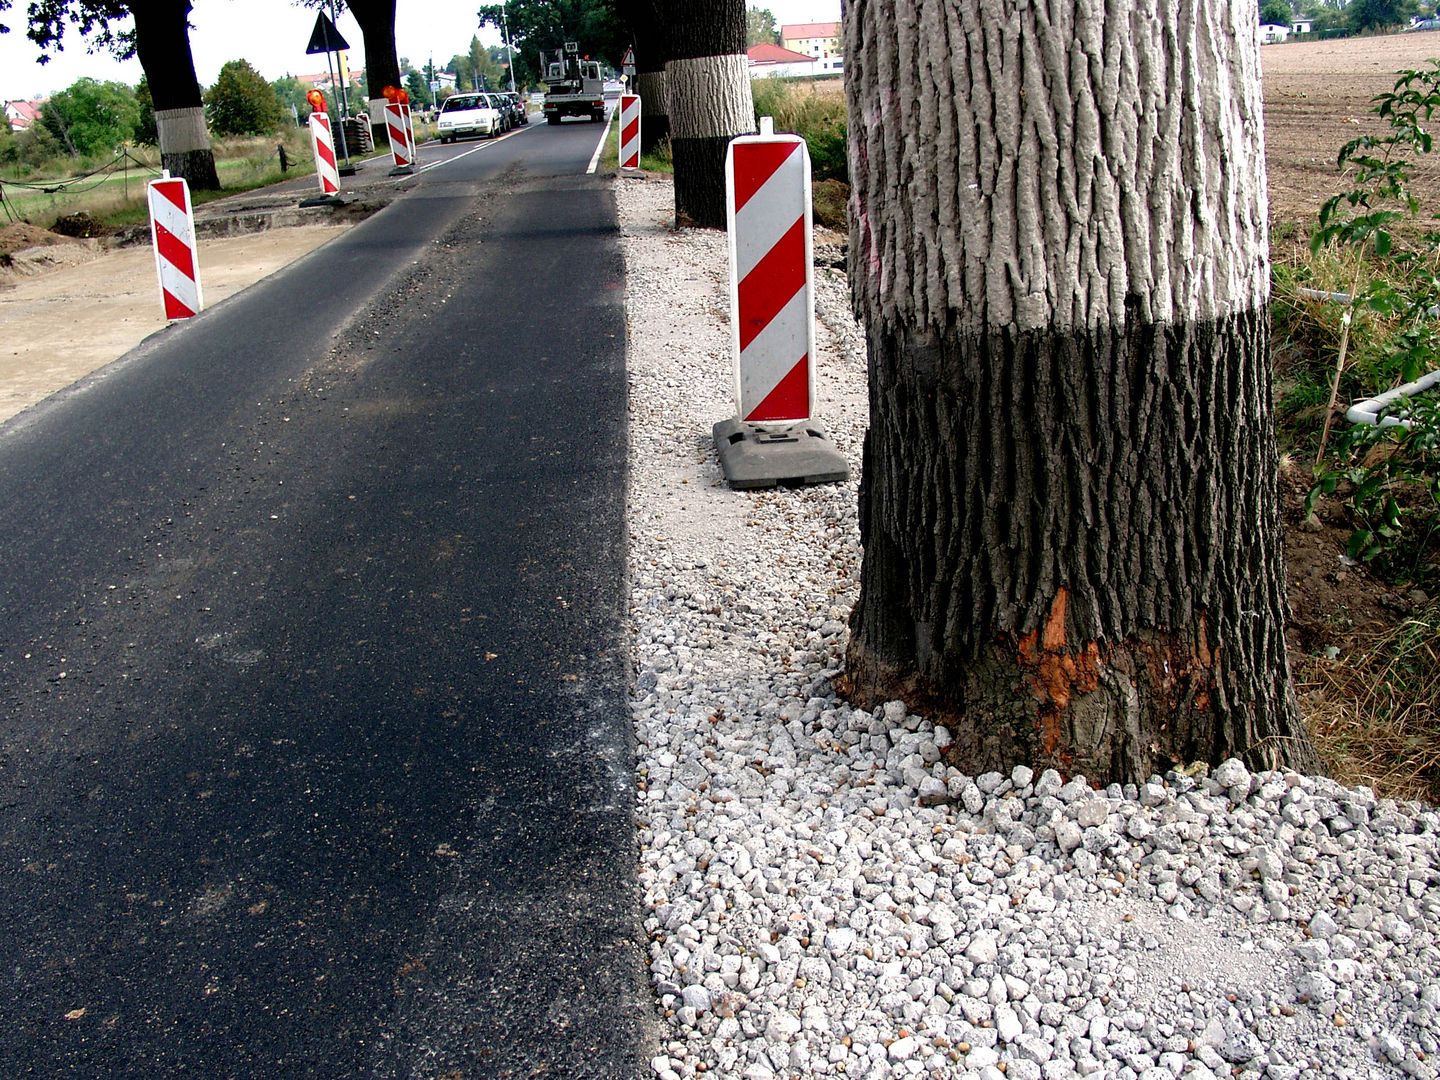 Straßenbau ohne Baumschutz kann Stämme und Wurzeln verletzen. Foto: BUND Brandenburg